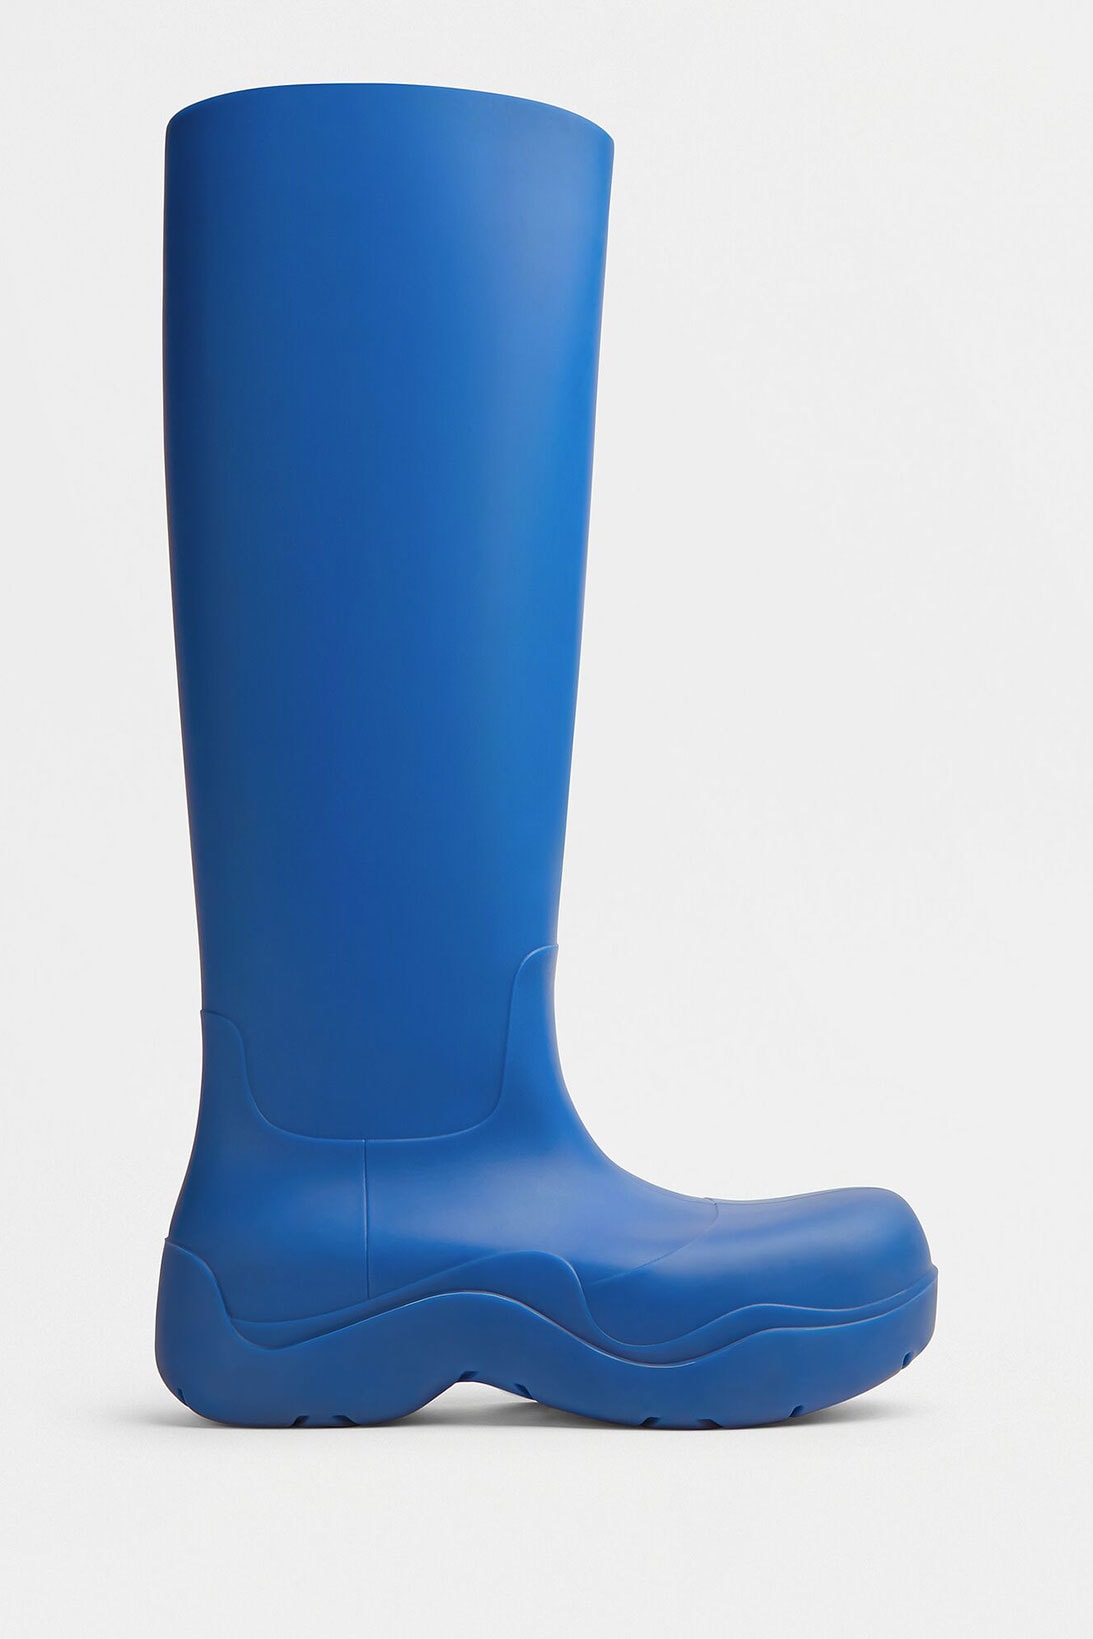 bottega veneta puddle boots knee high blue shoes